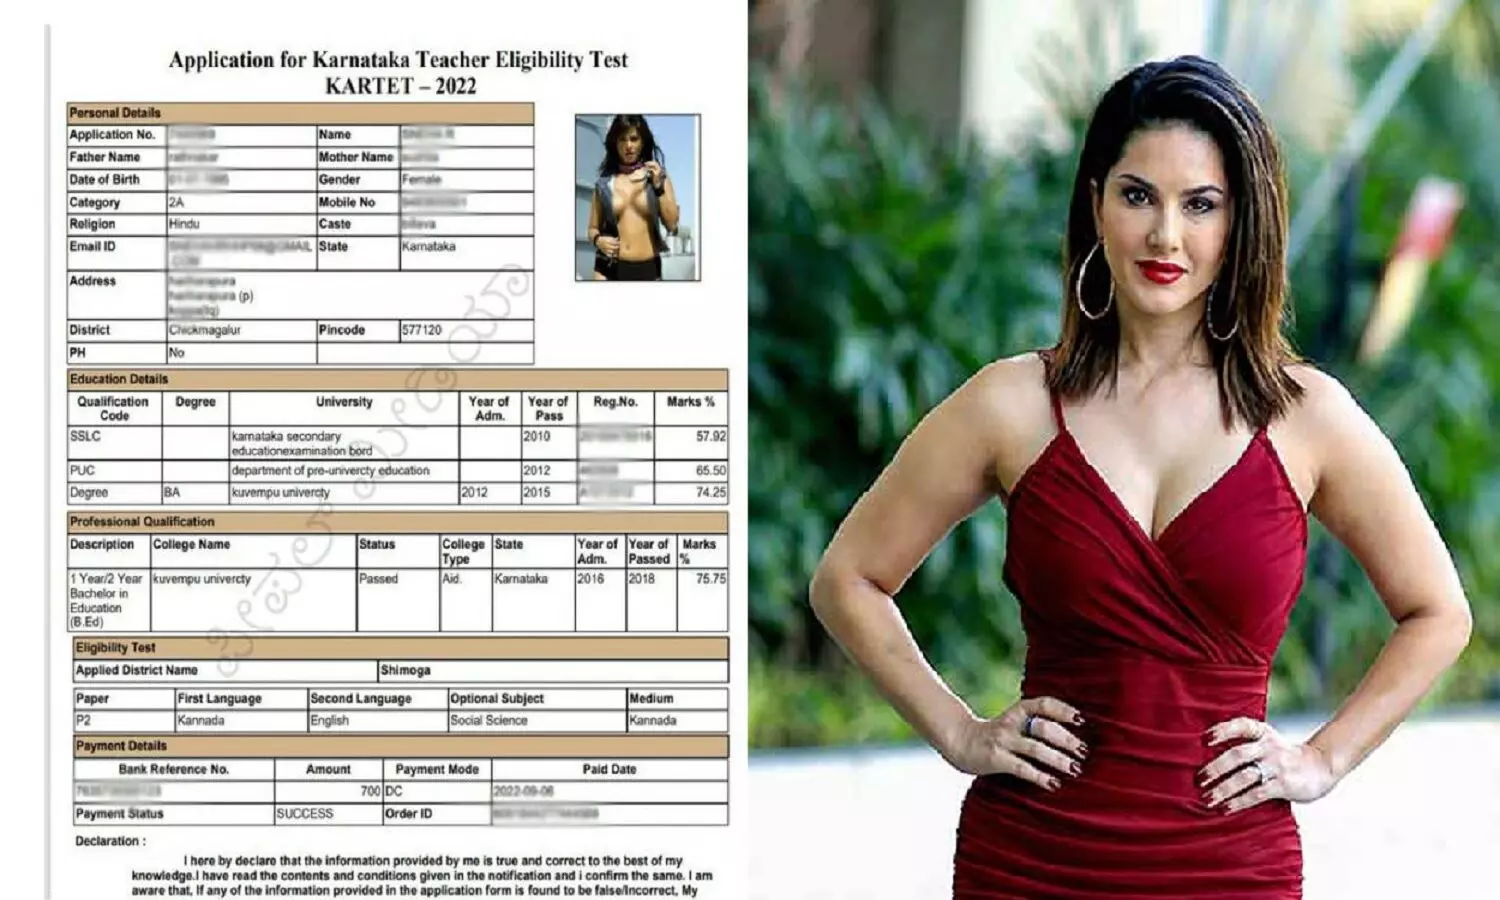 Sunny Leone Pic In TET Admit Card: टीईटी एडमिट कार्ड में सनी लोयोनी की फोटो! पढ़े पूरा मामला